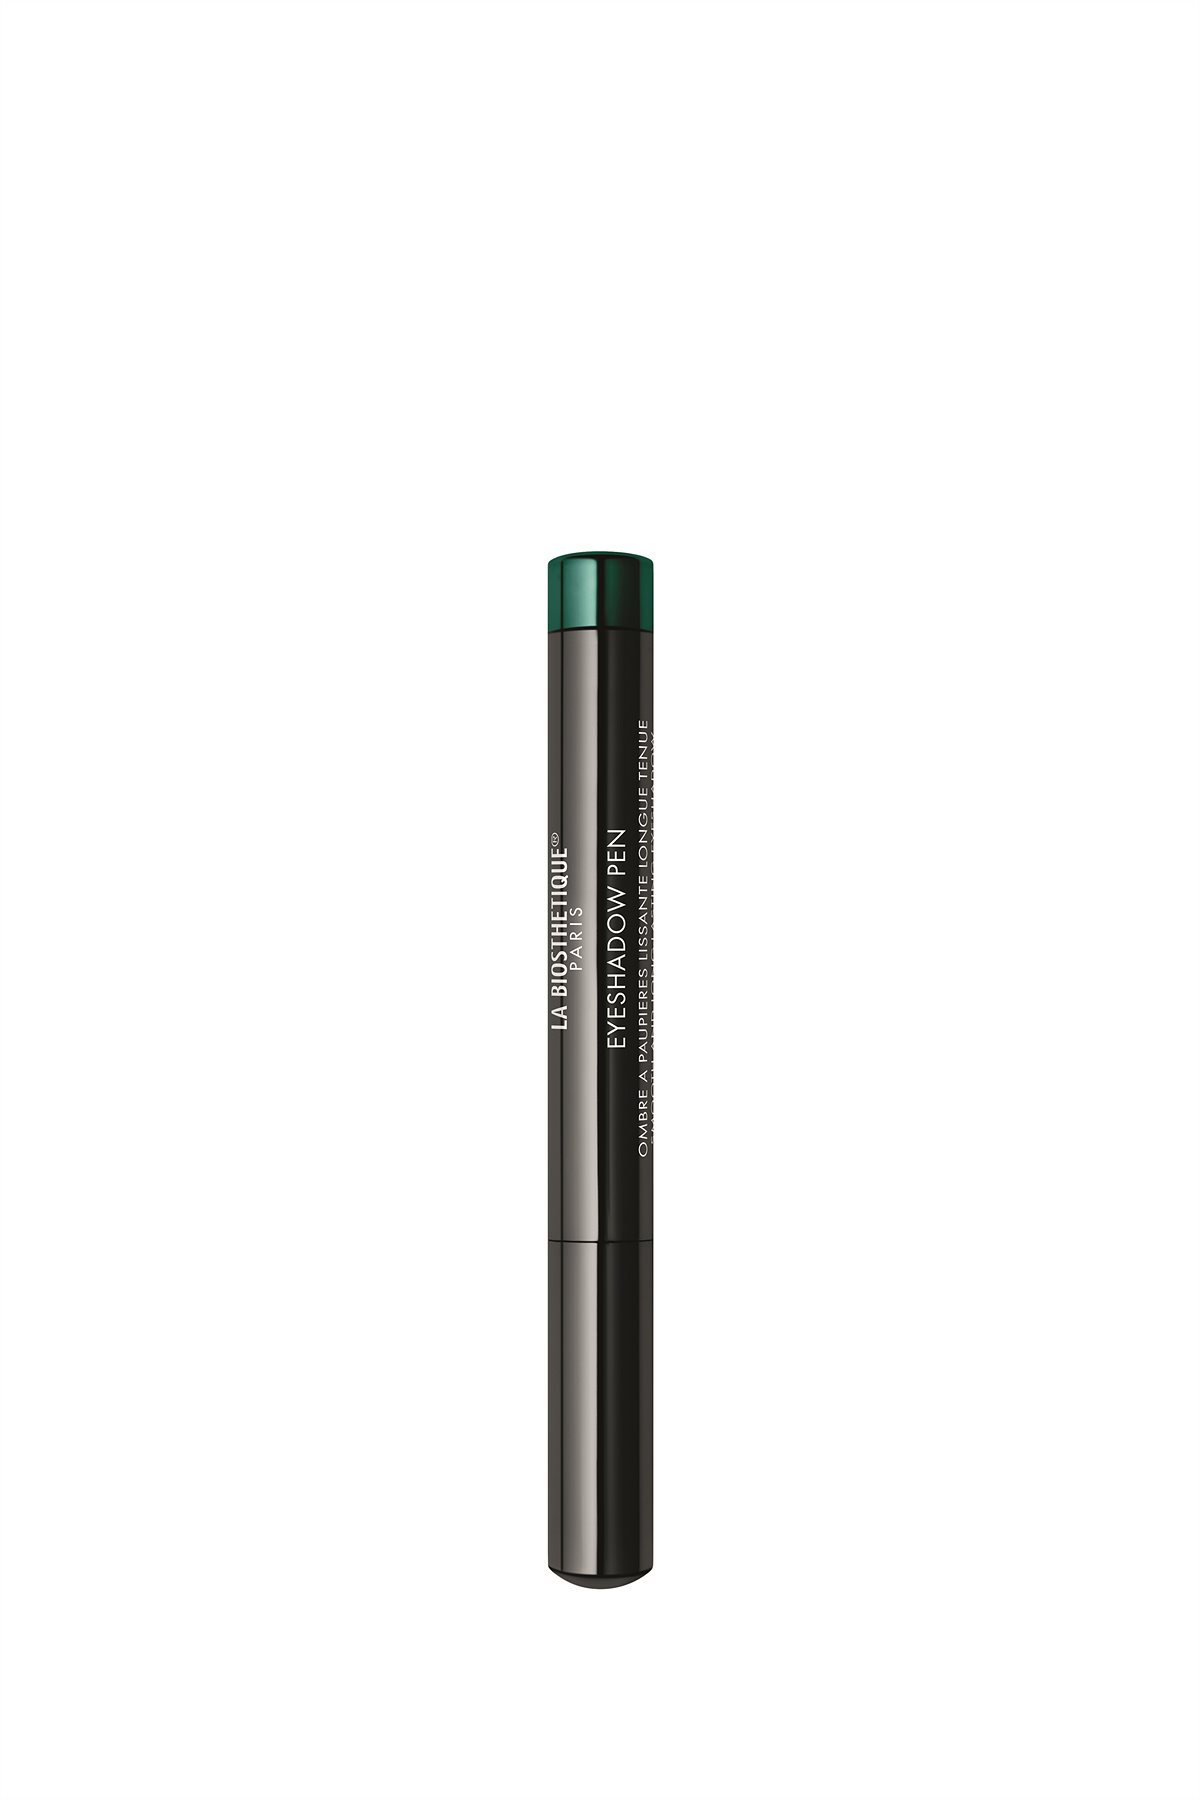 La Biosthétique_Lidschattenstift, wisch- und wasserfest_Eyeshadow Pen Pine Green_1,4 g_20.00 €